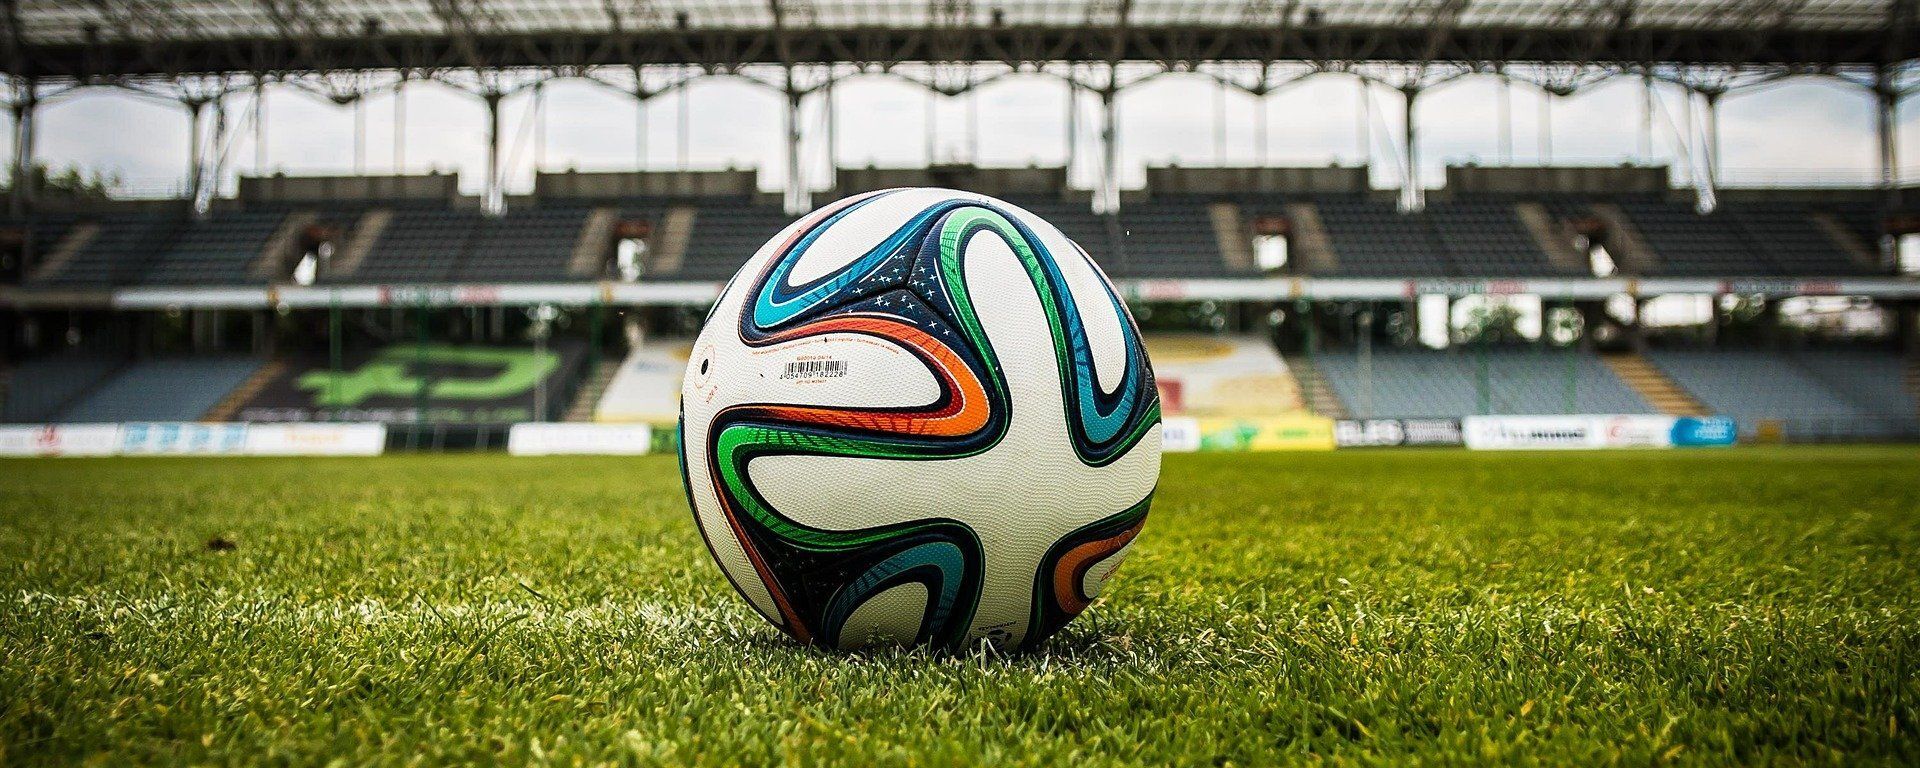 Balón de fútbol en un estadio (imagen referencial) - Sputnik Mundo, 1920, 20.04.2021